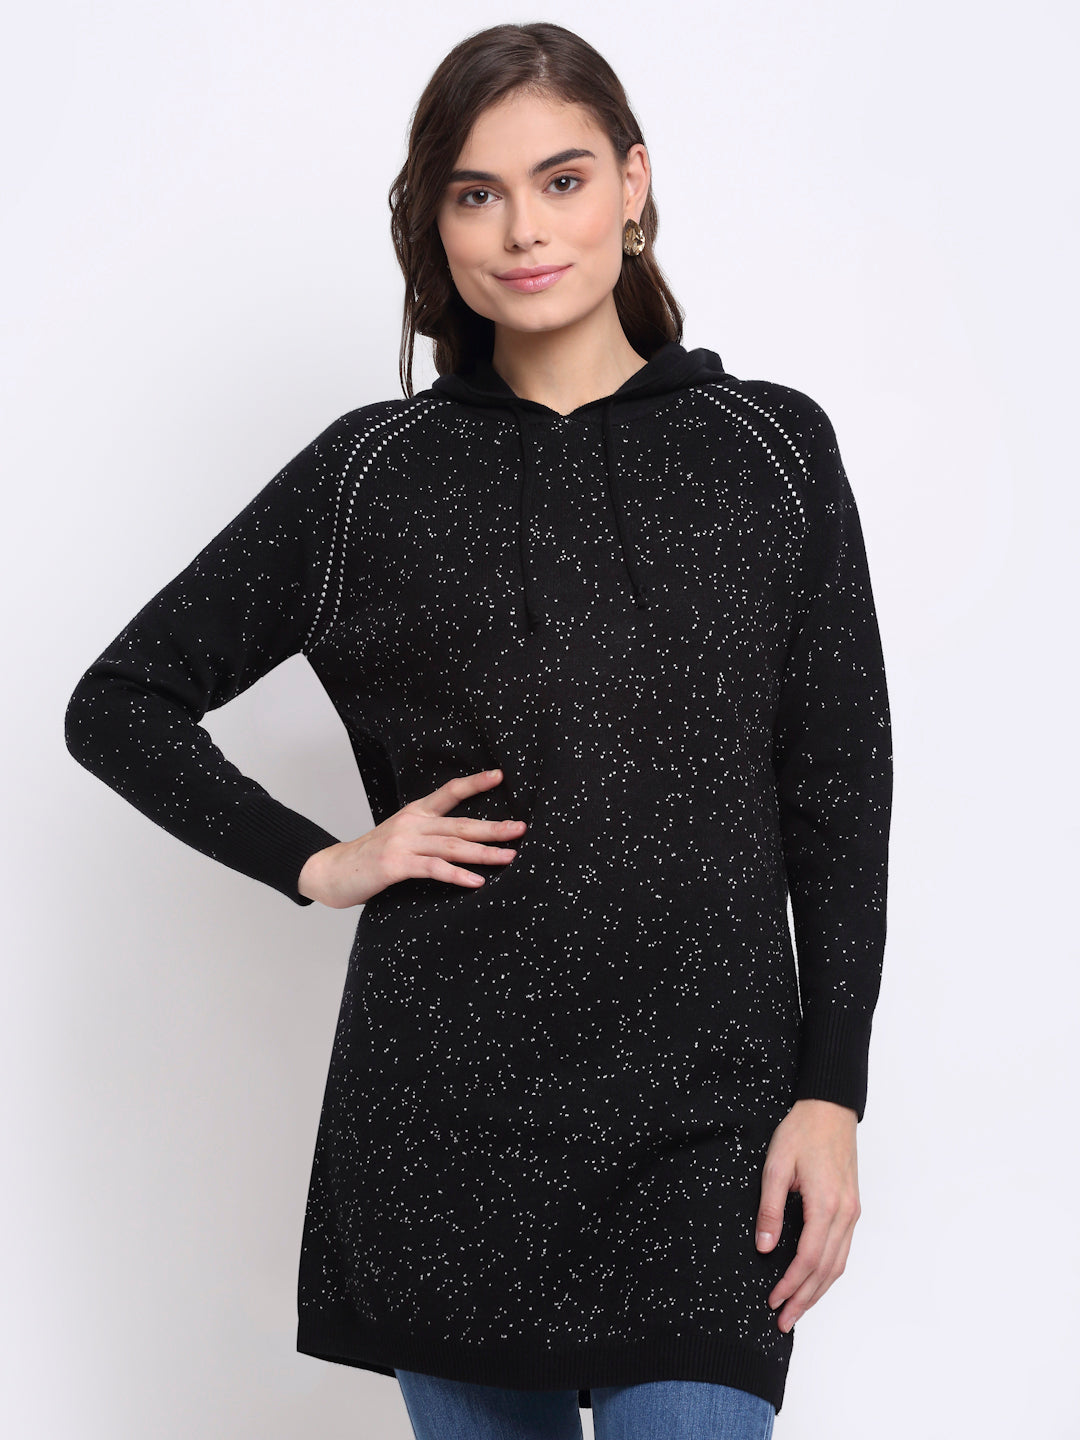 women black hooded solid knit dress